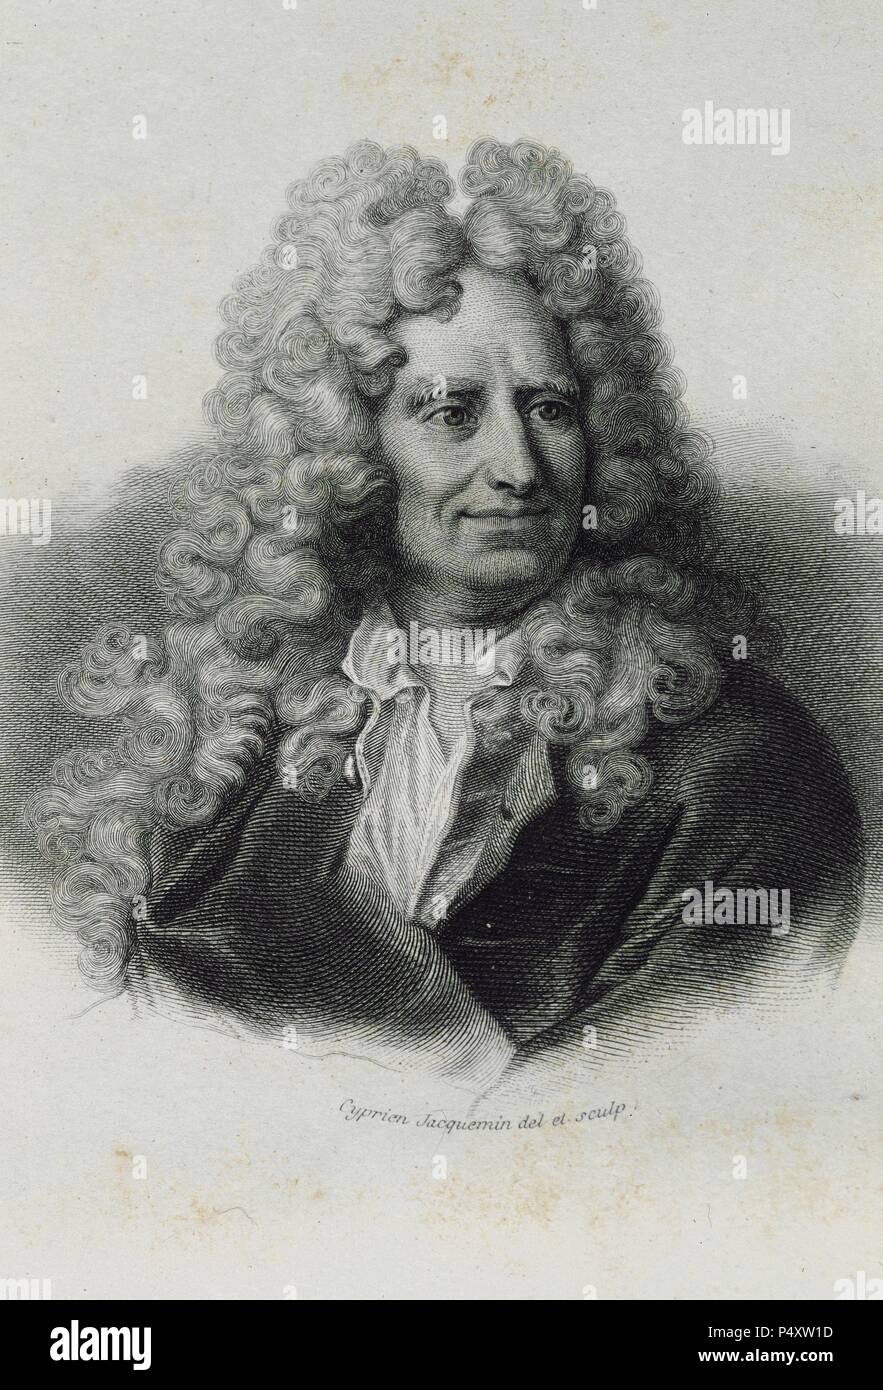 Nicolas Boileau-Despreaux (1636-1711). Französischer Dichter. Kupferstich von Cyprien Jacquemin. Stockfoto